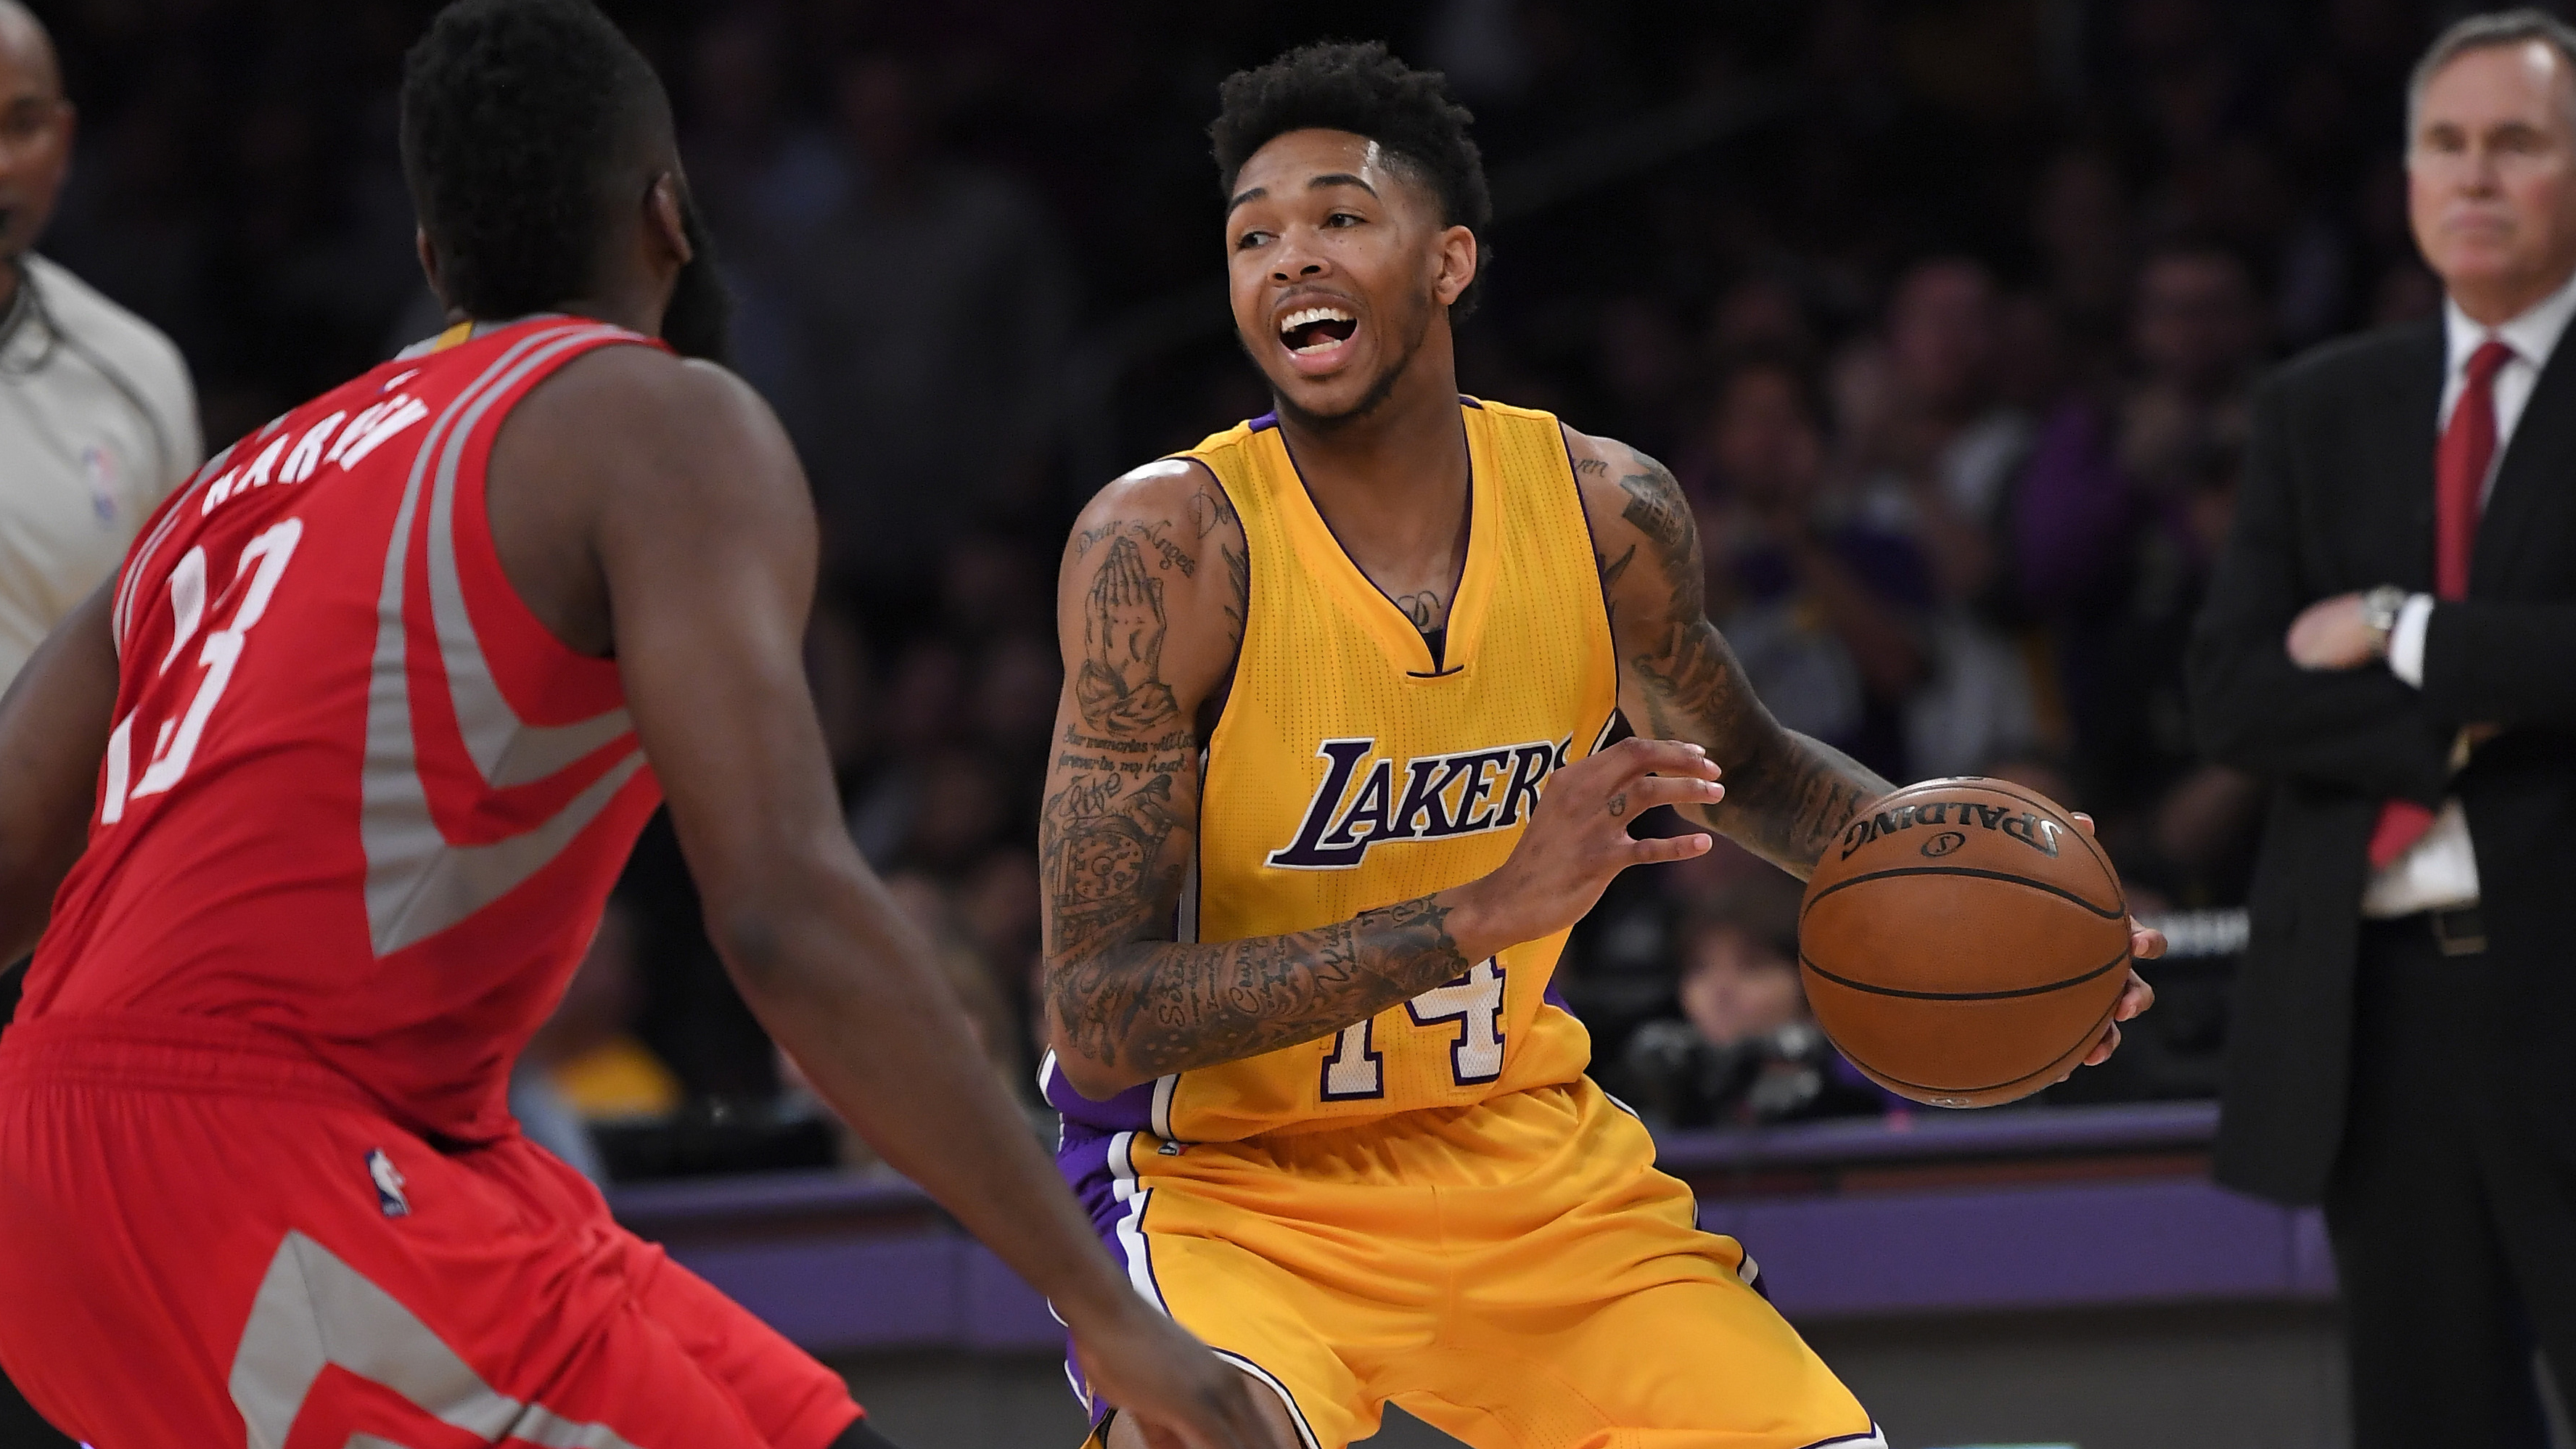 Ingram (rodilla), Lakers, abandona duelo vs. Jazz